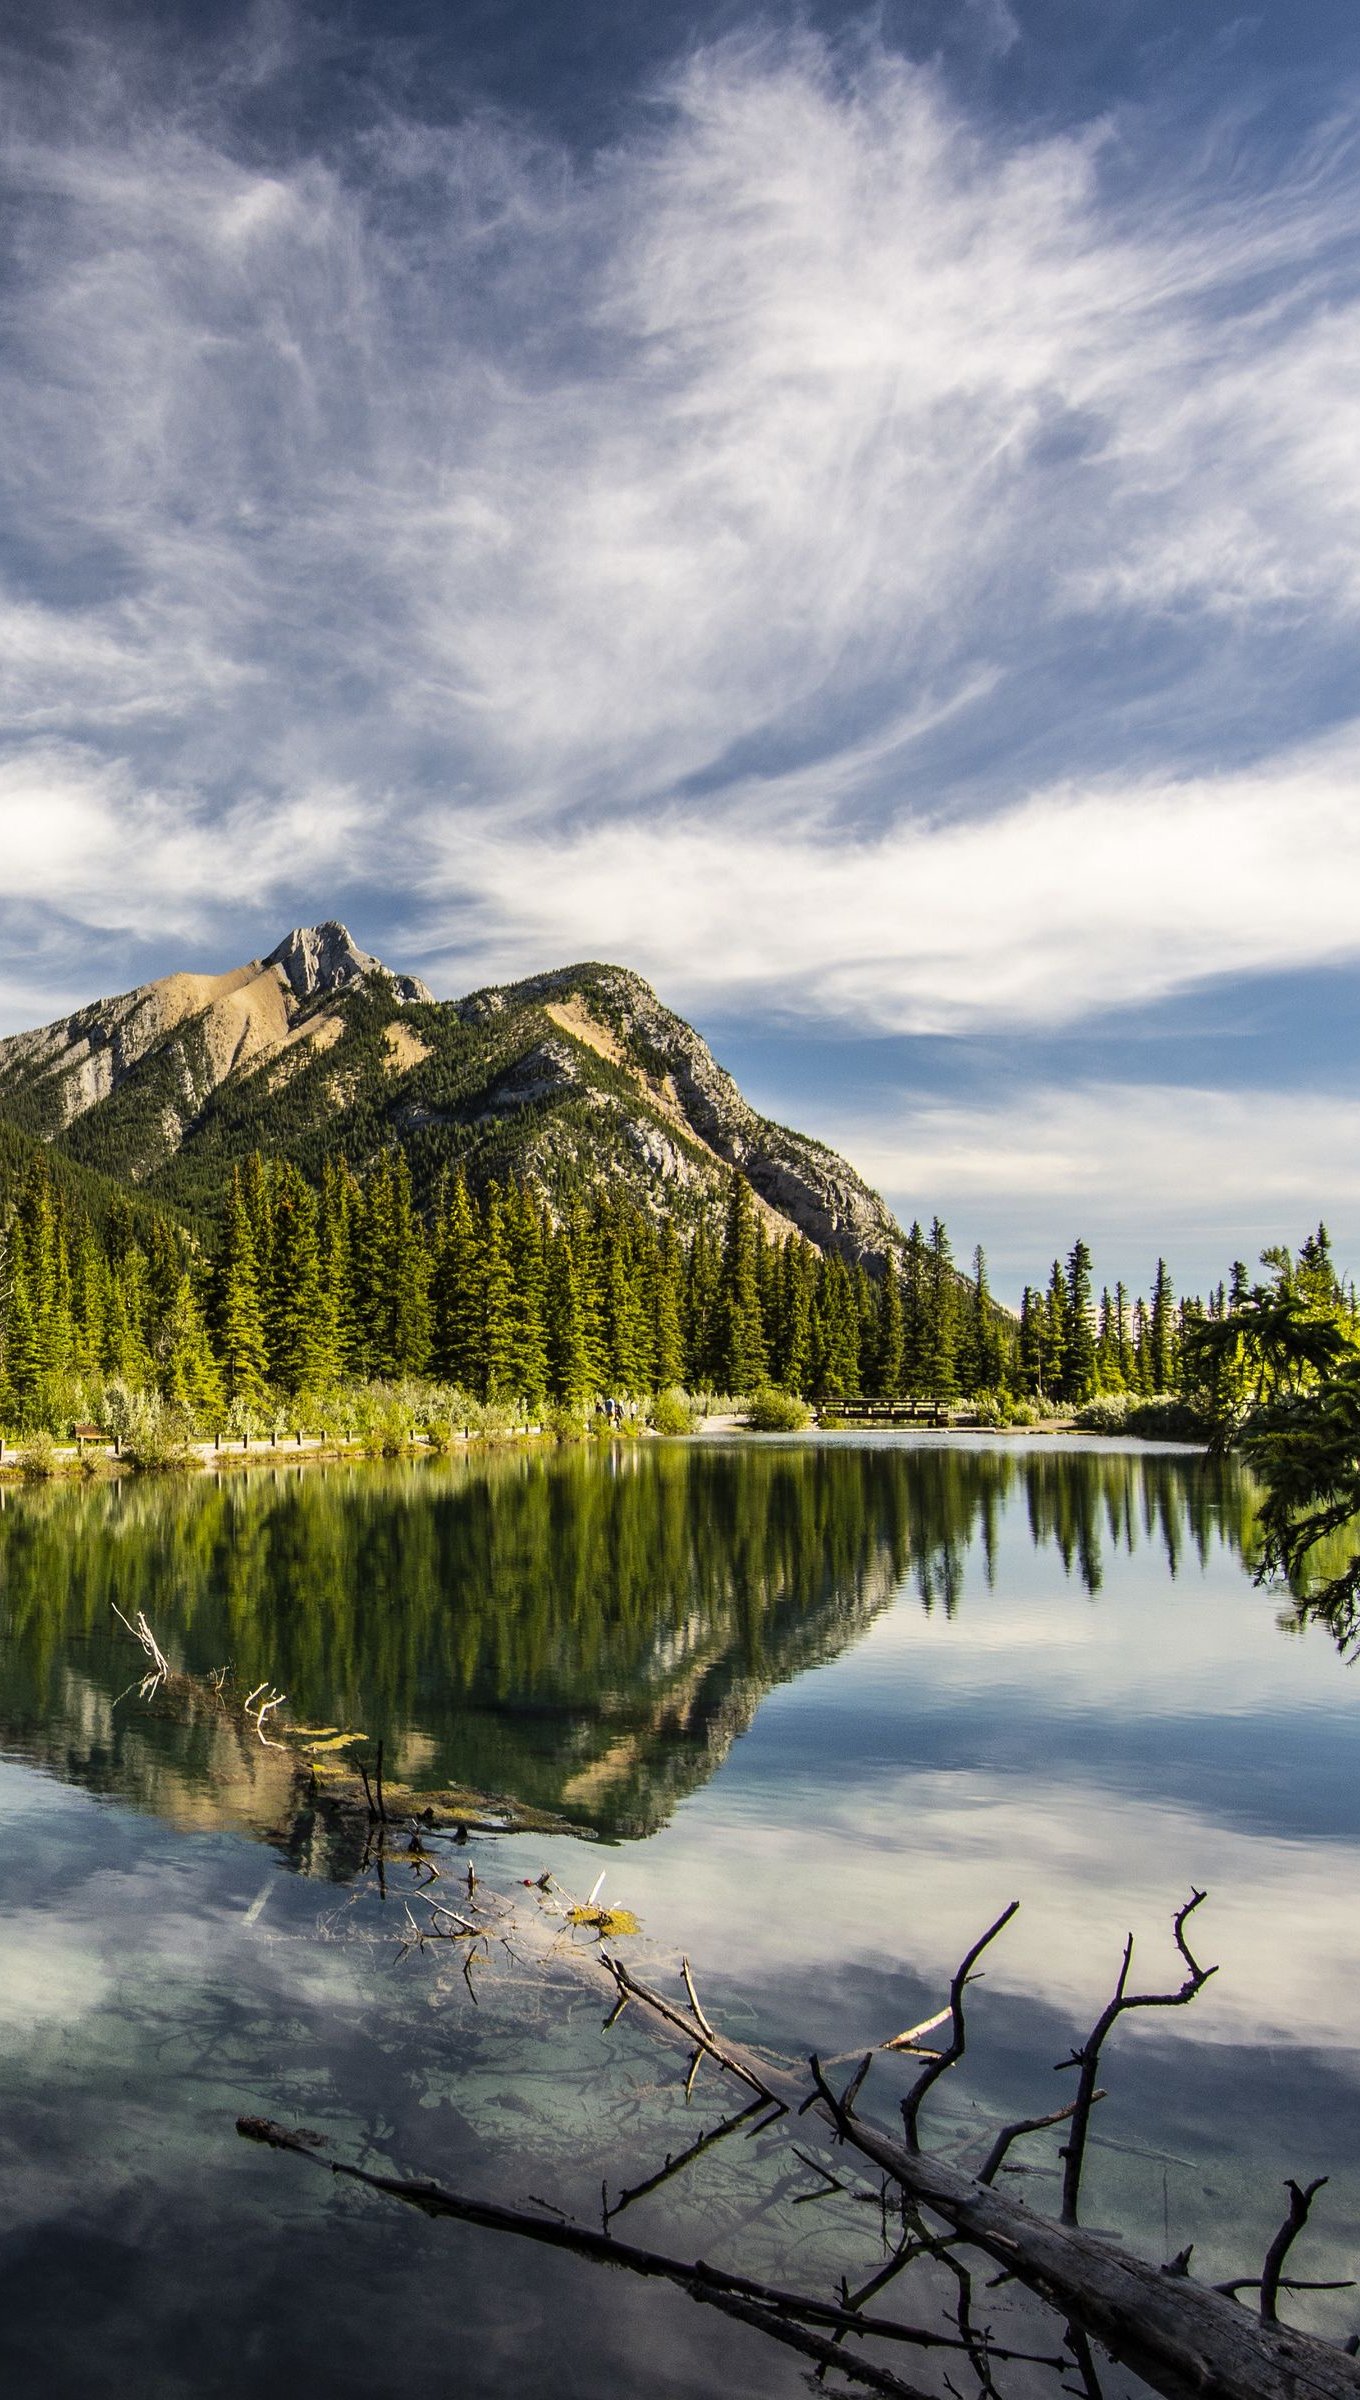 Fondos de pantalla Bosque y montaña reflejados en lago Vertical